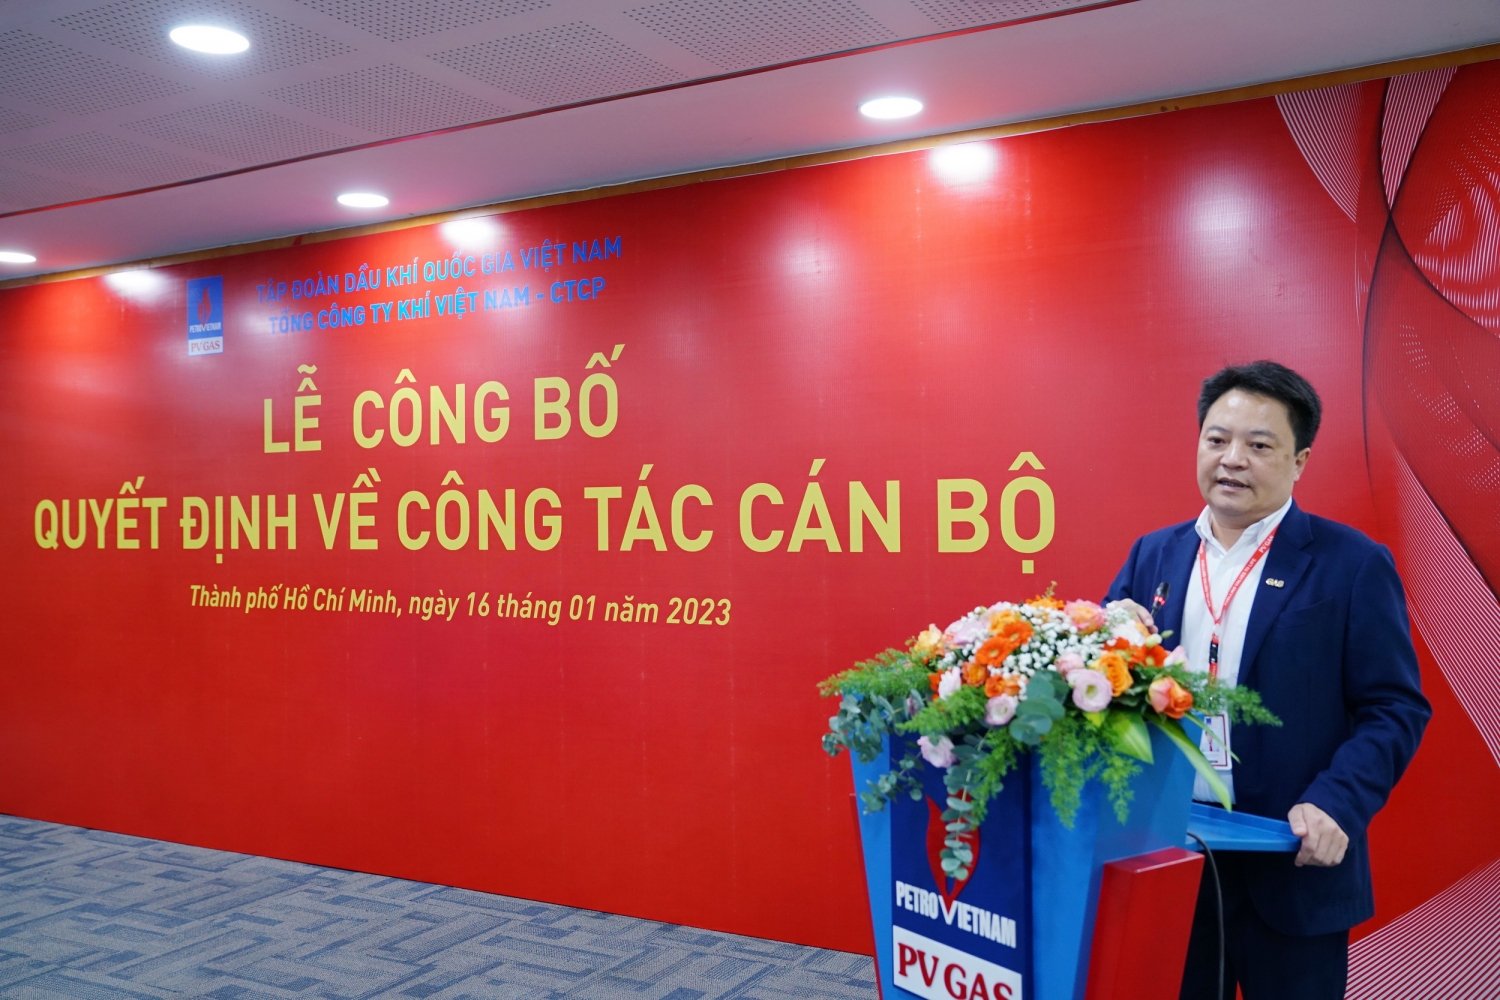  Tổng Giám đốc PV GAS Hoàng Văn Quang phát biểu chúc mừng và giao nhiệm vụ cho 2 cán bộ mới